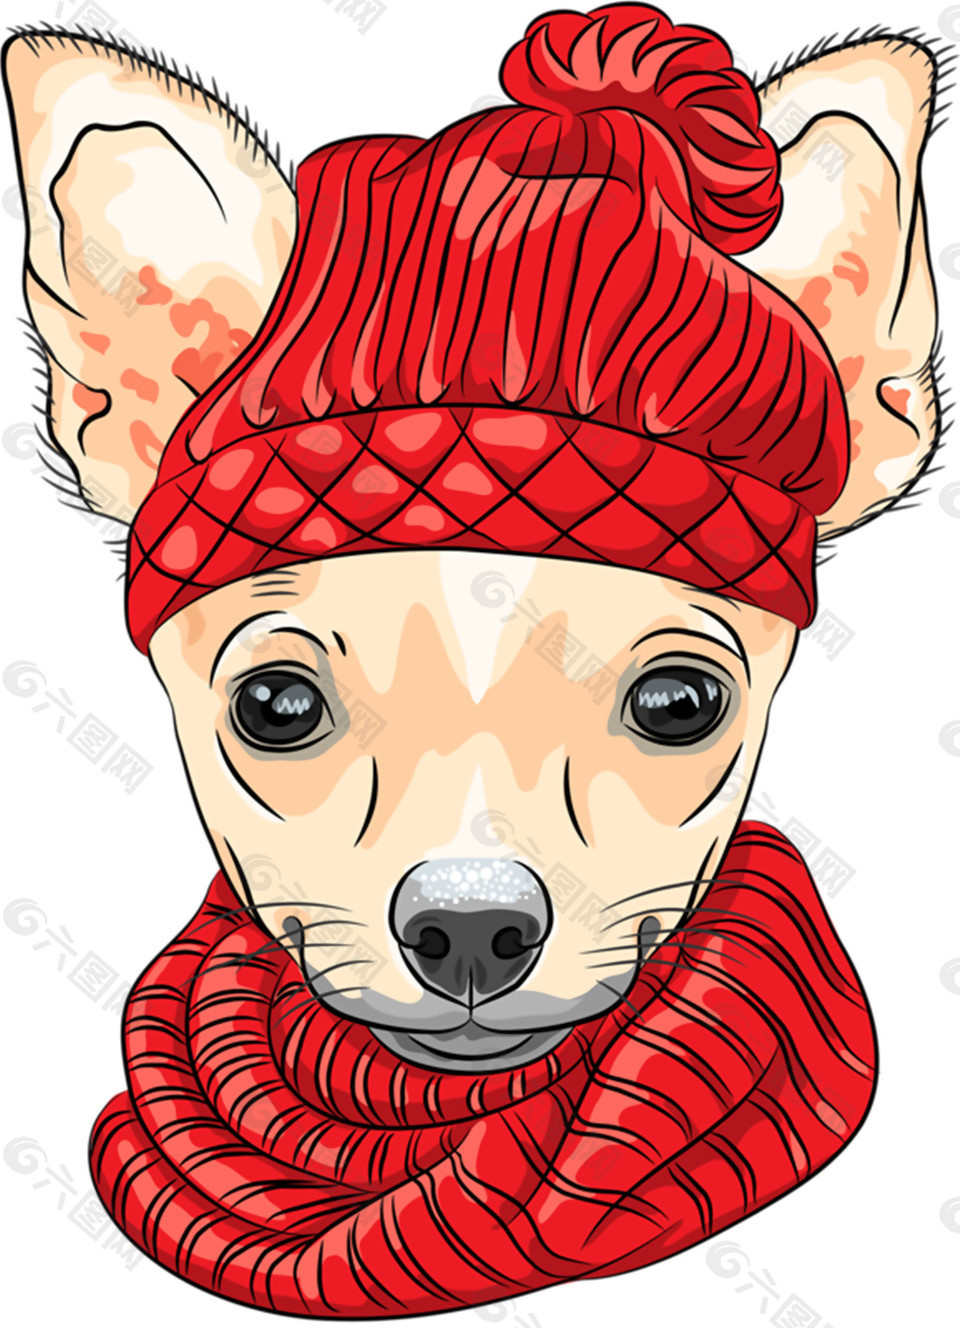 温暖红色围巾小狗卡通手绘装饰元素